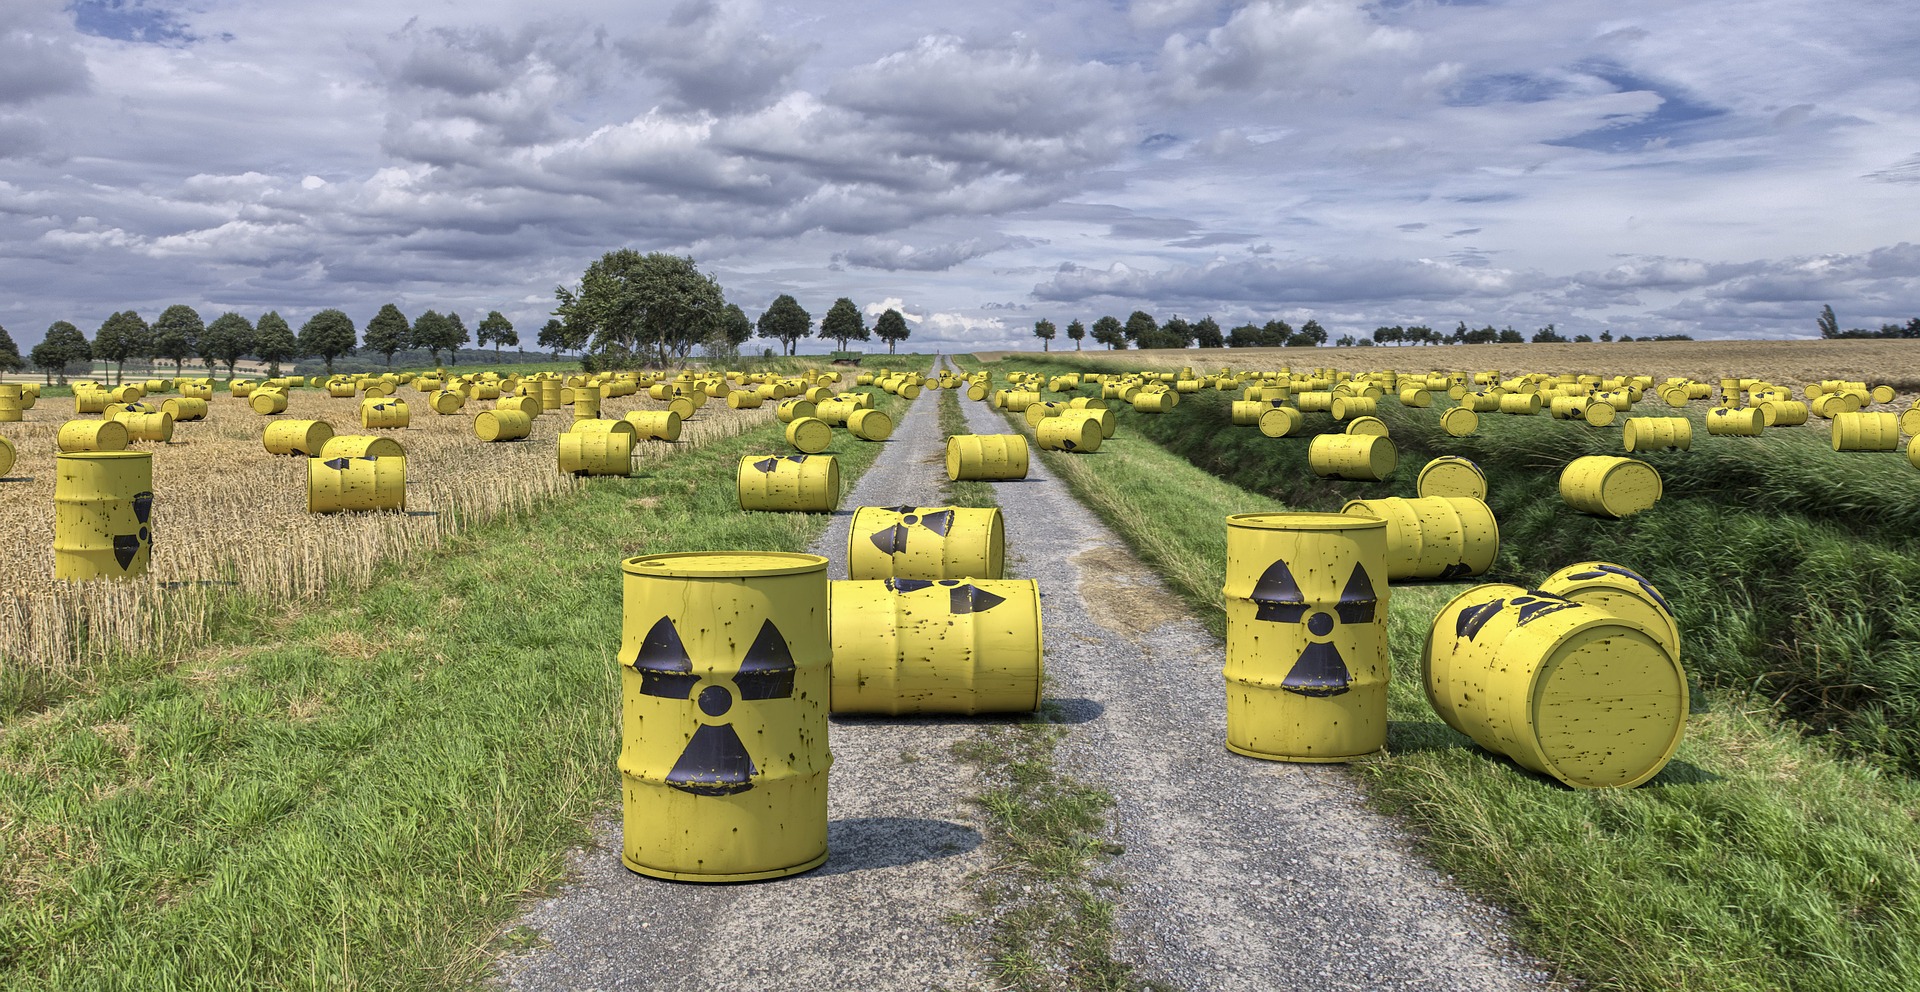 Projet d’enfouissement de déchets nucléaires : conception à revoir, imbroglios procéduraux… arrêtons CIGEO ! | France Nature Environnement